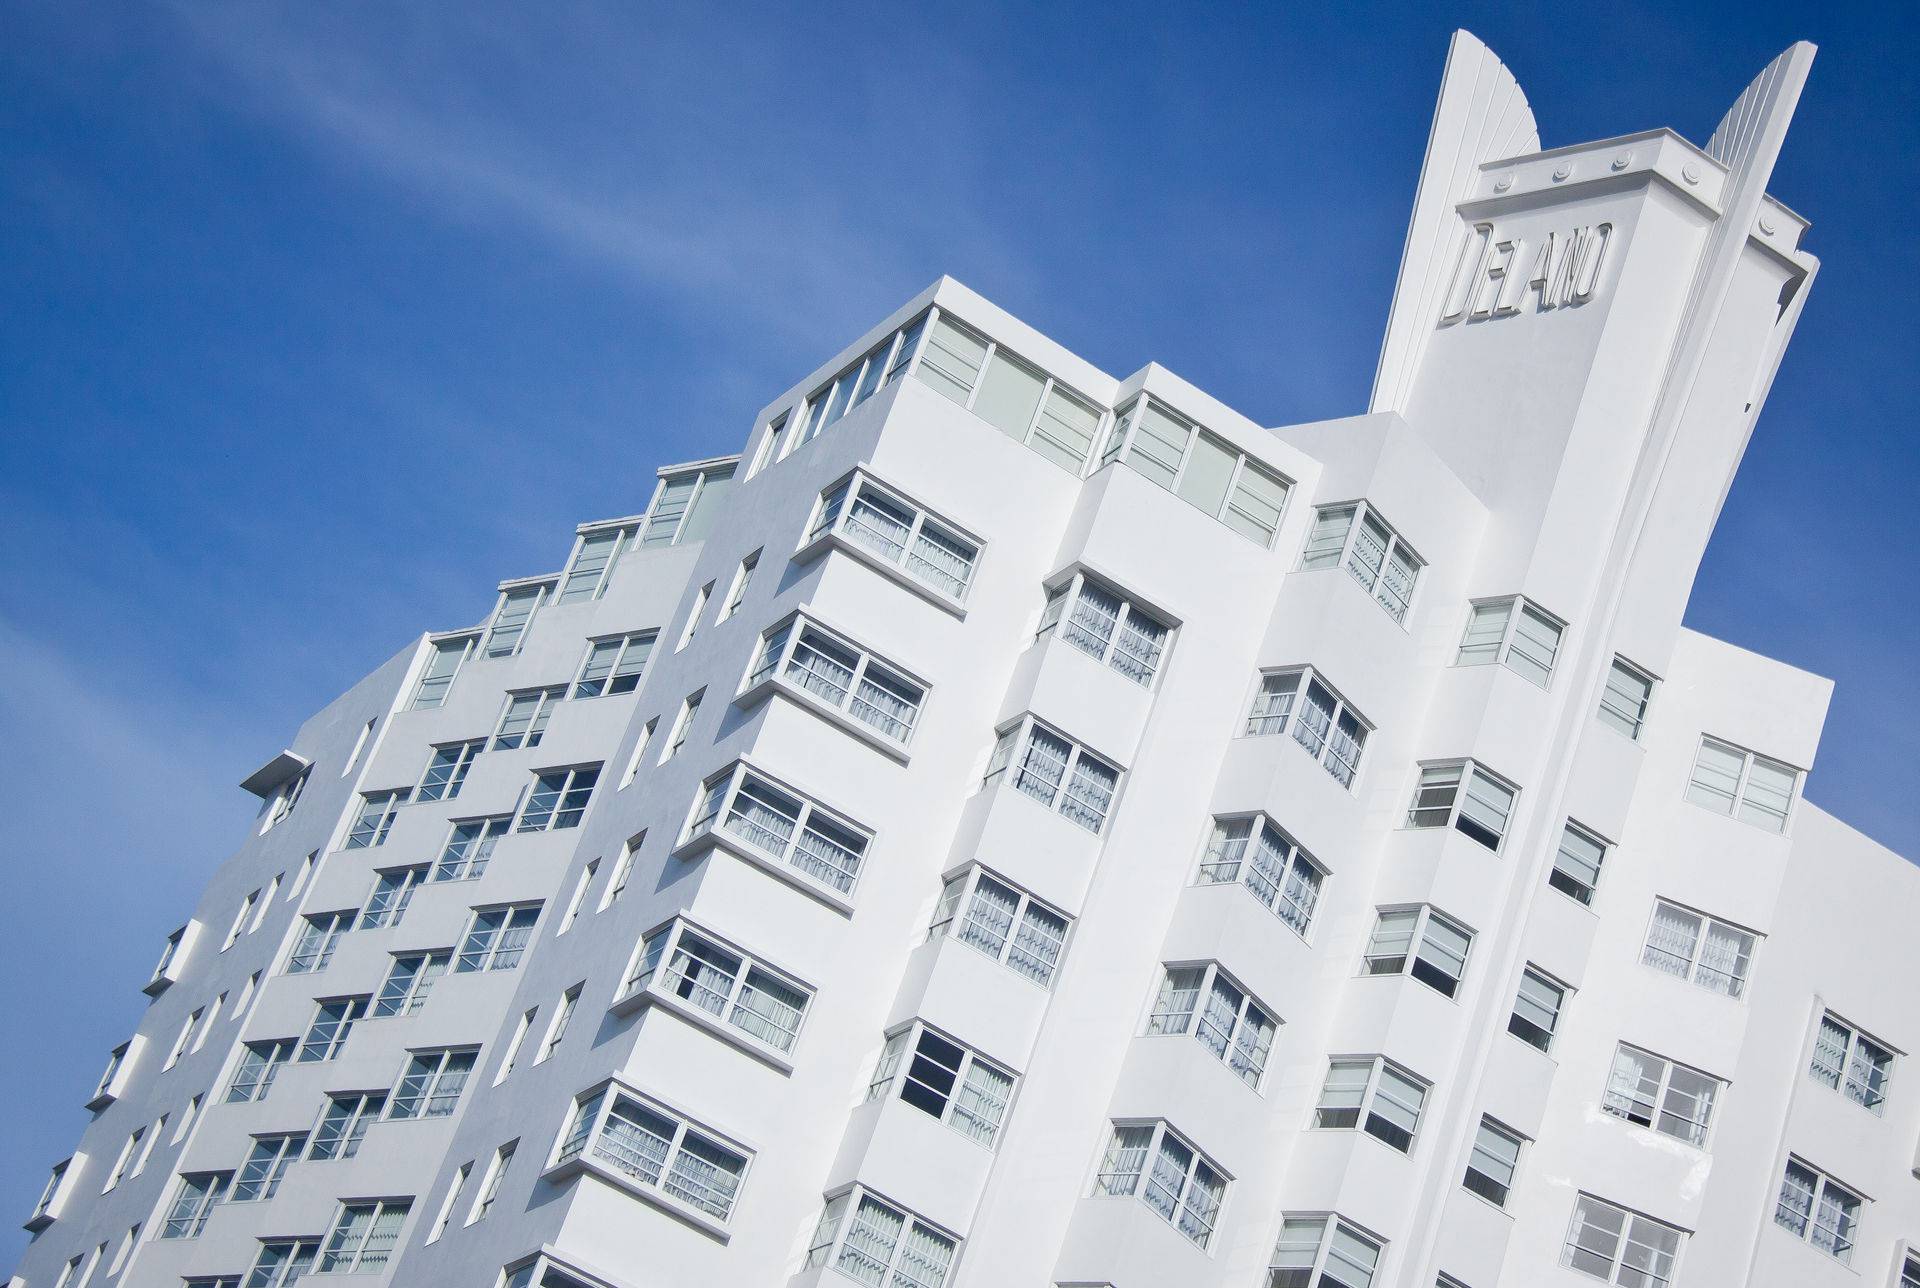 Hôtels à Miami : attention aux frais cachés